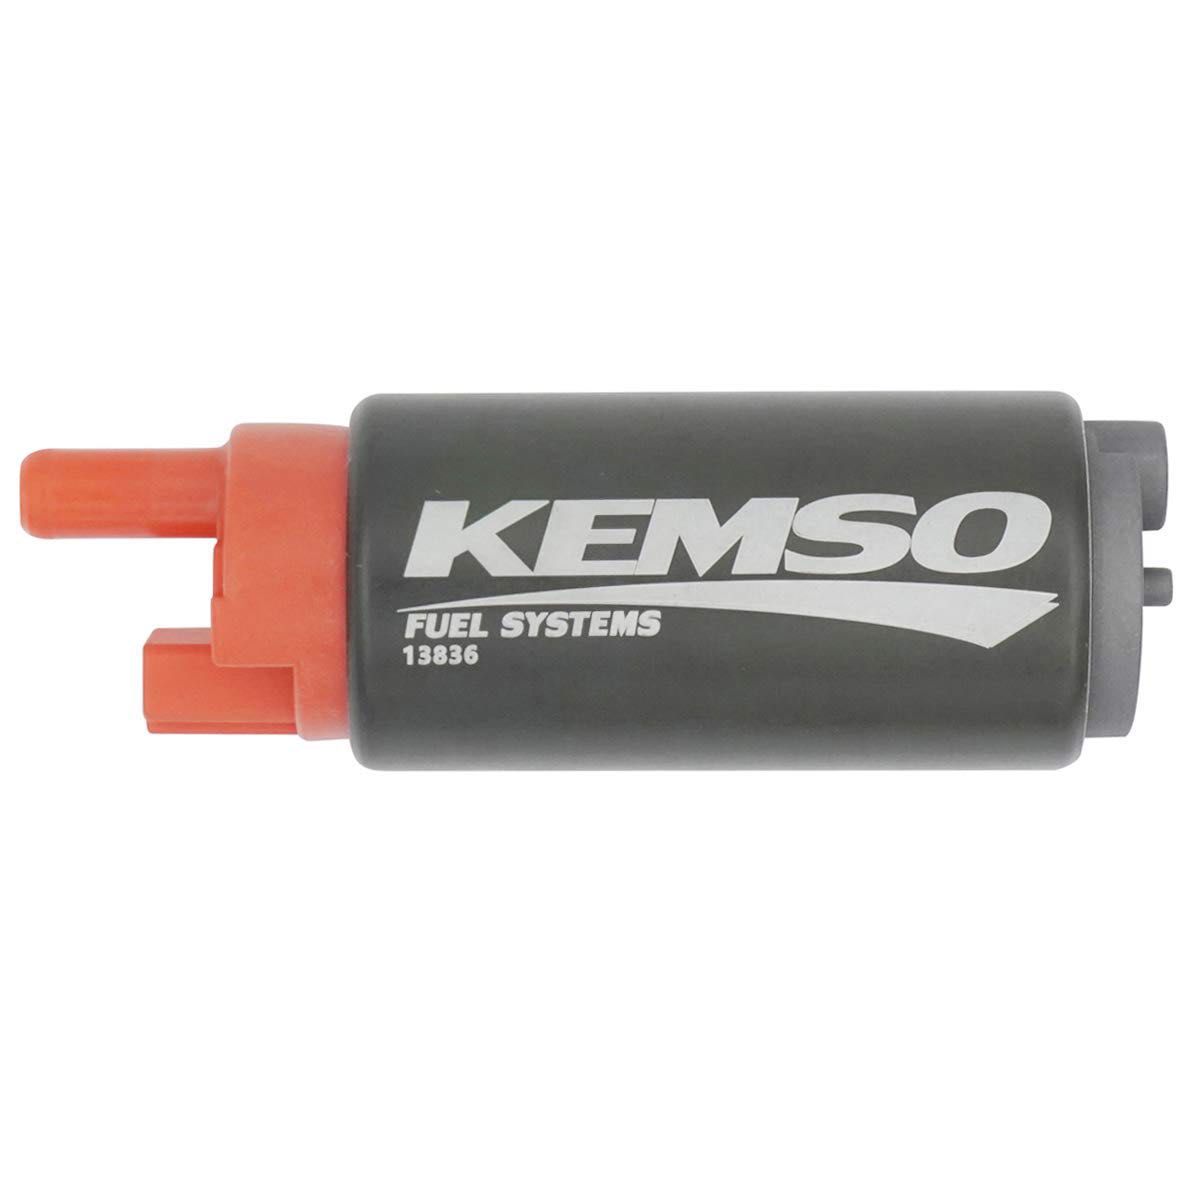 KEMSO 13836 OEM 交換タンク燃料ポンプ 38mm (本体直径) UC-T30 燃料ポンプ用途